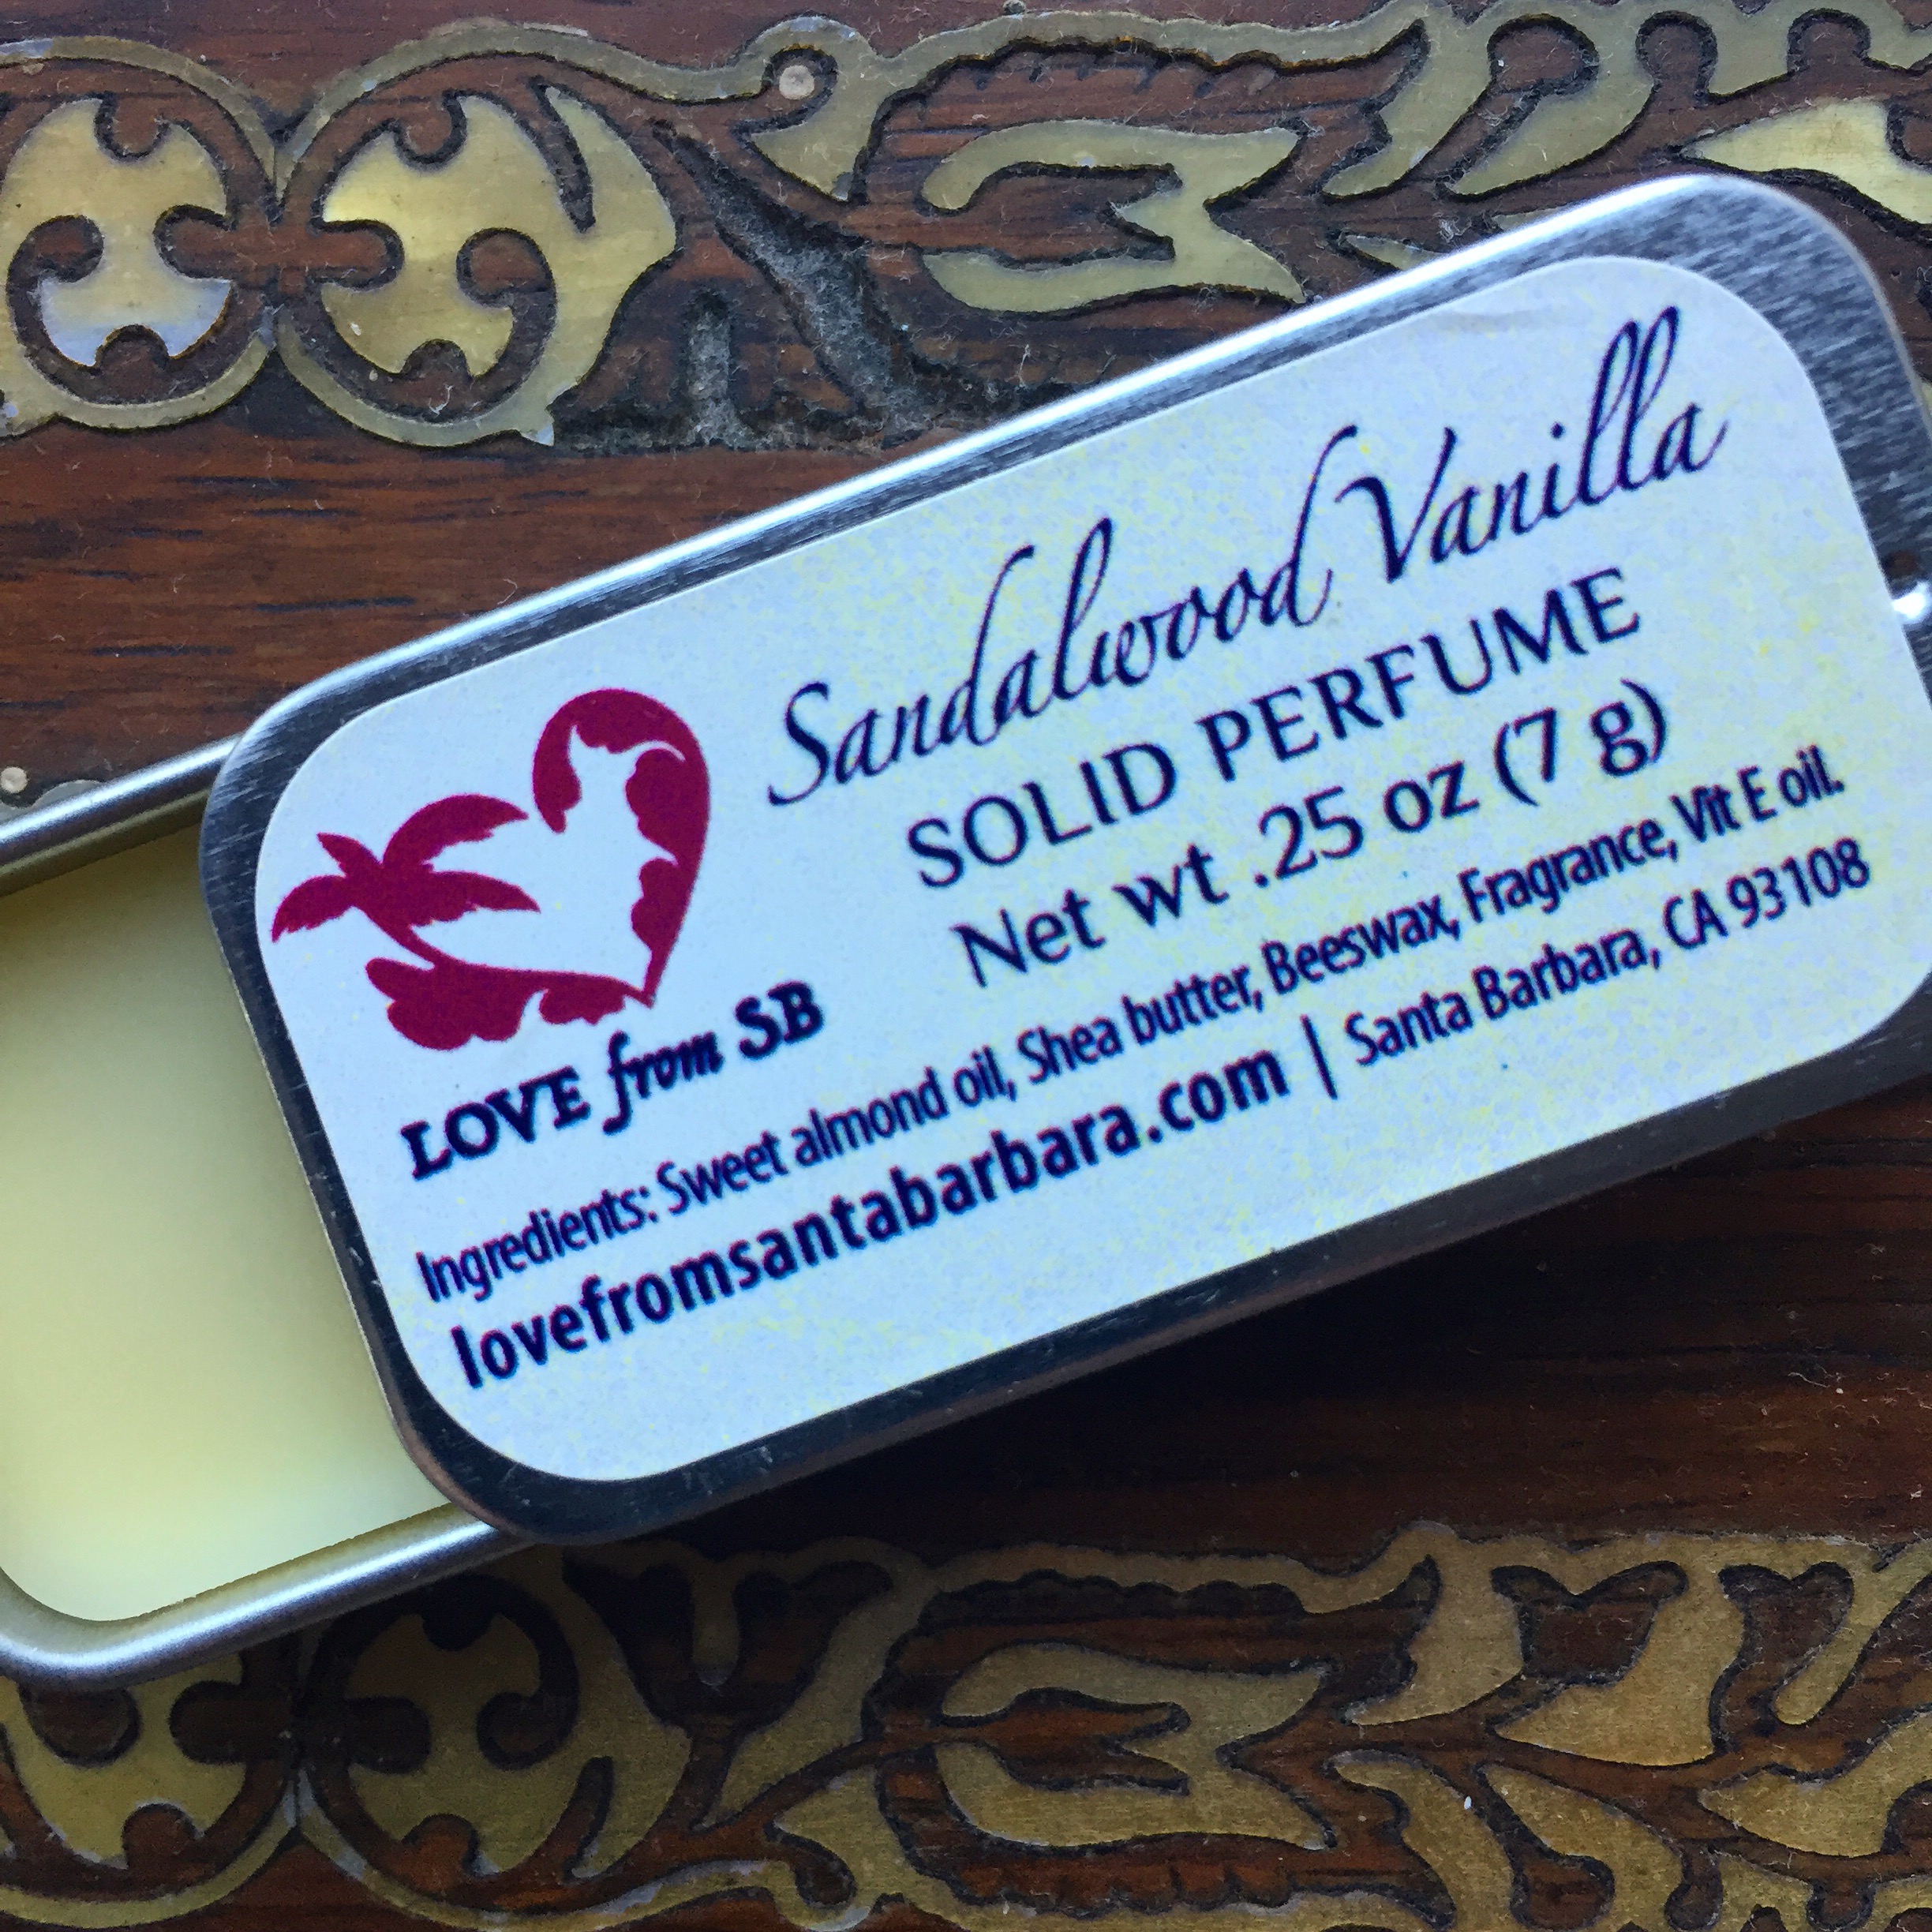 Sandalwood Vanilla Solid Perfume